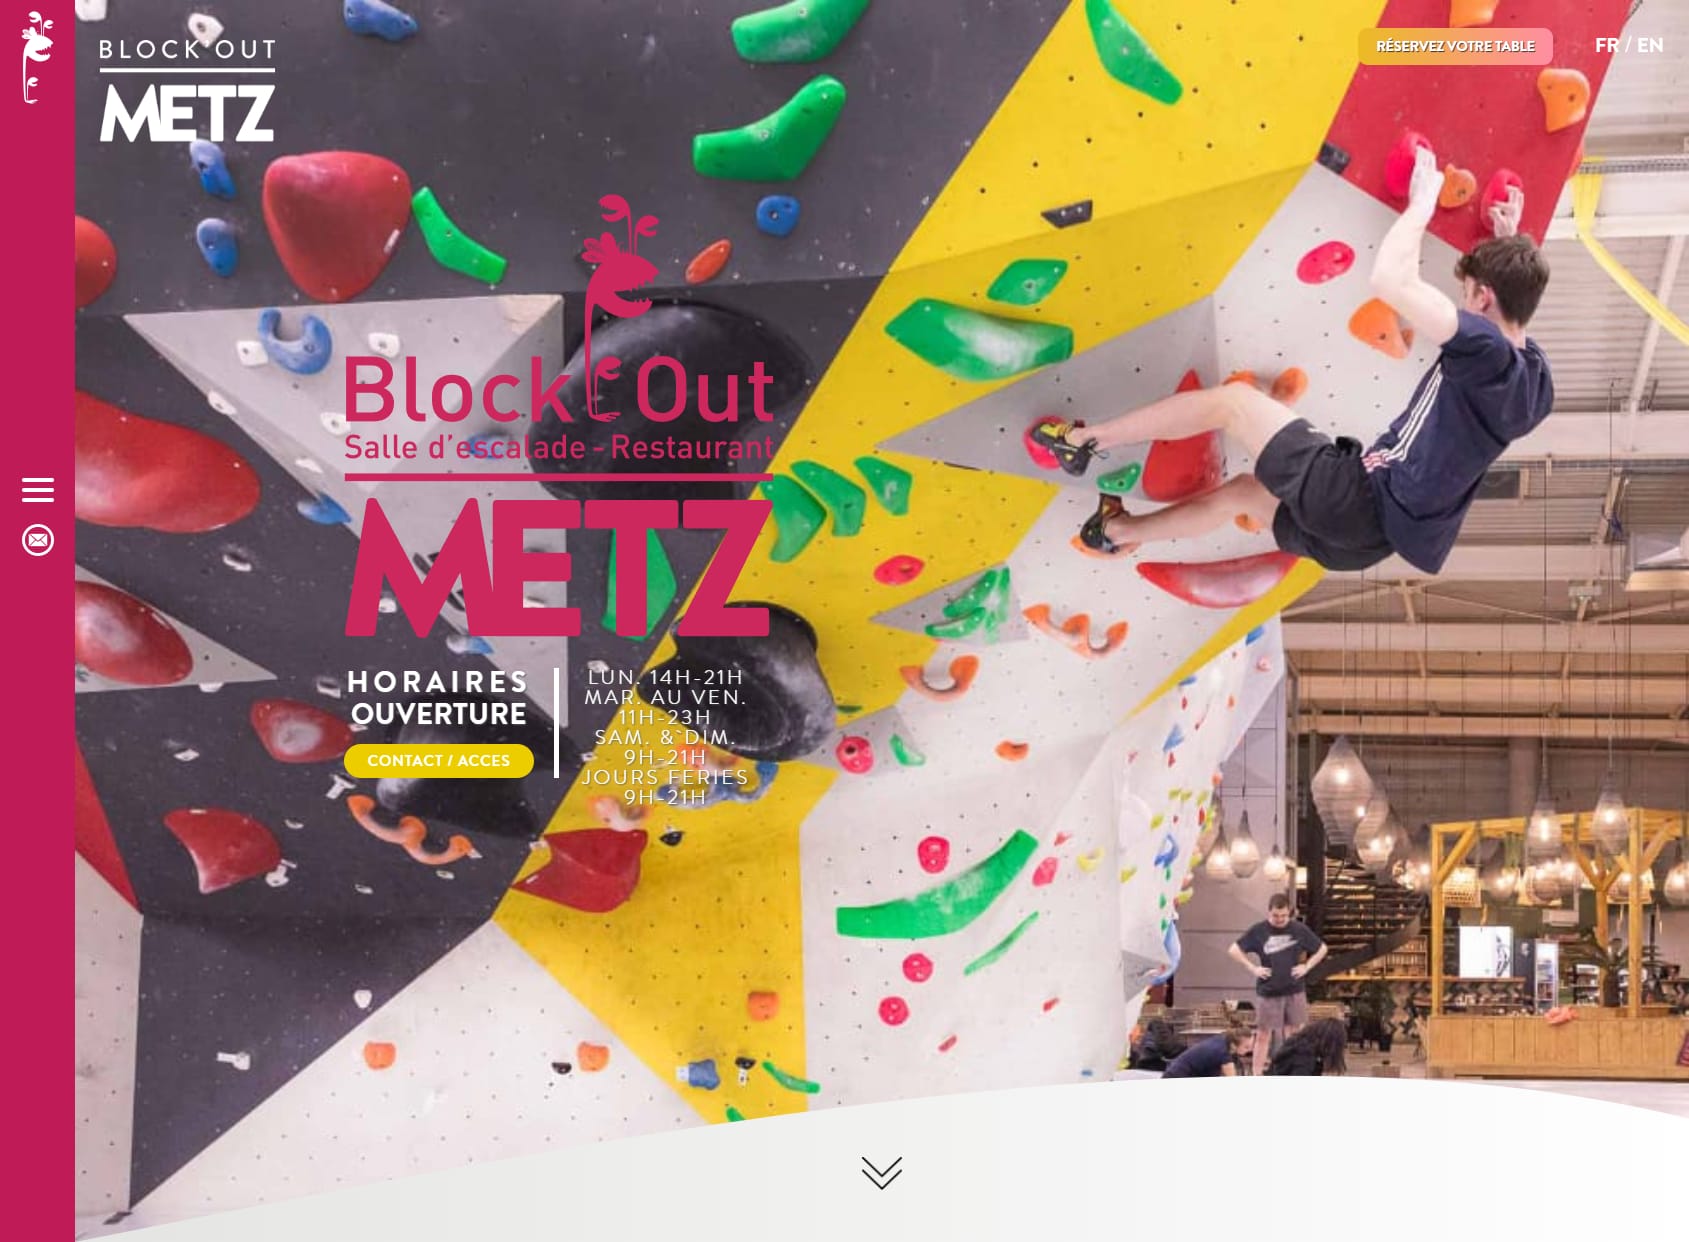 Block'Out Metz